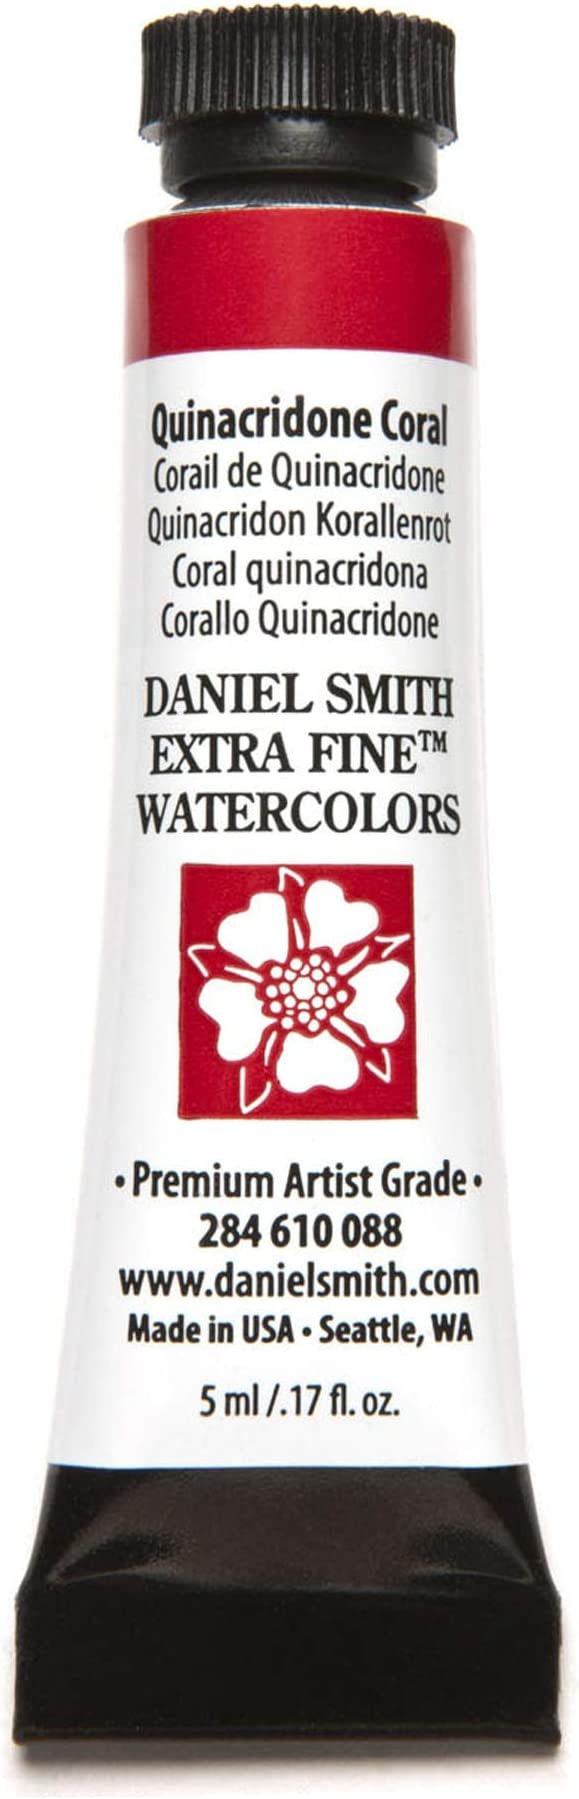 Daniel Smith 284610088 Extra Fine Watercolors Tube, 5ml, Quinacridone Coral